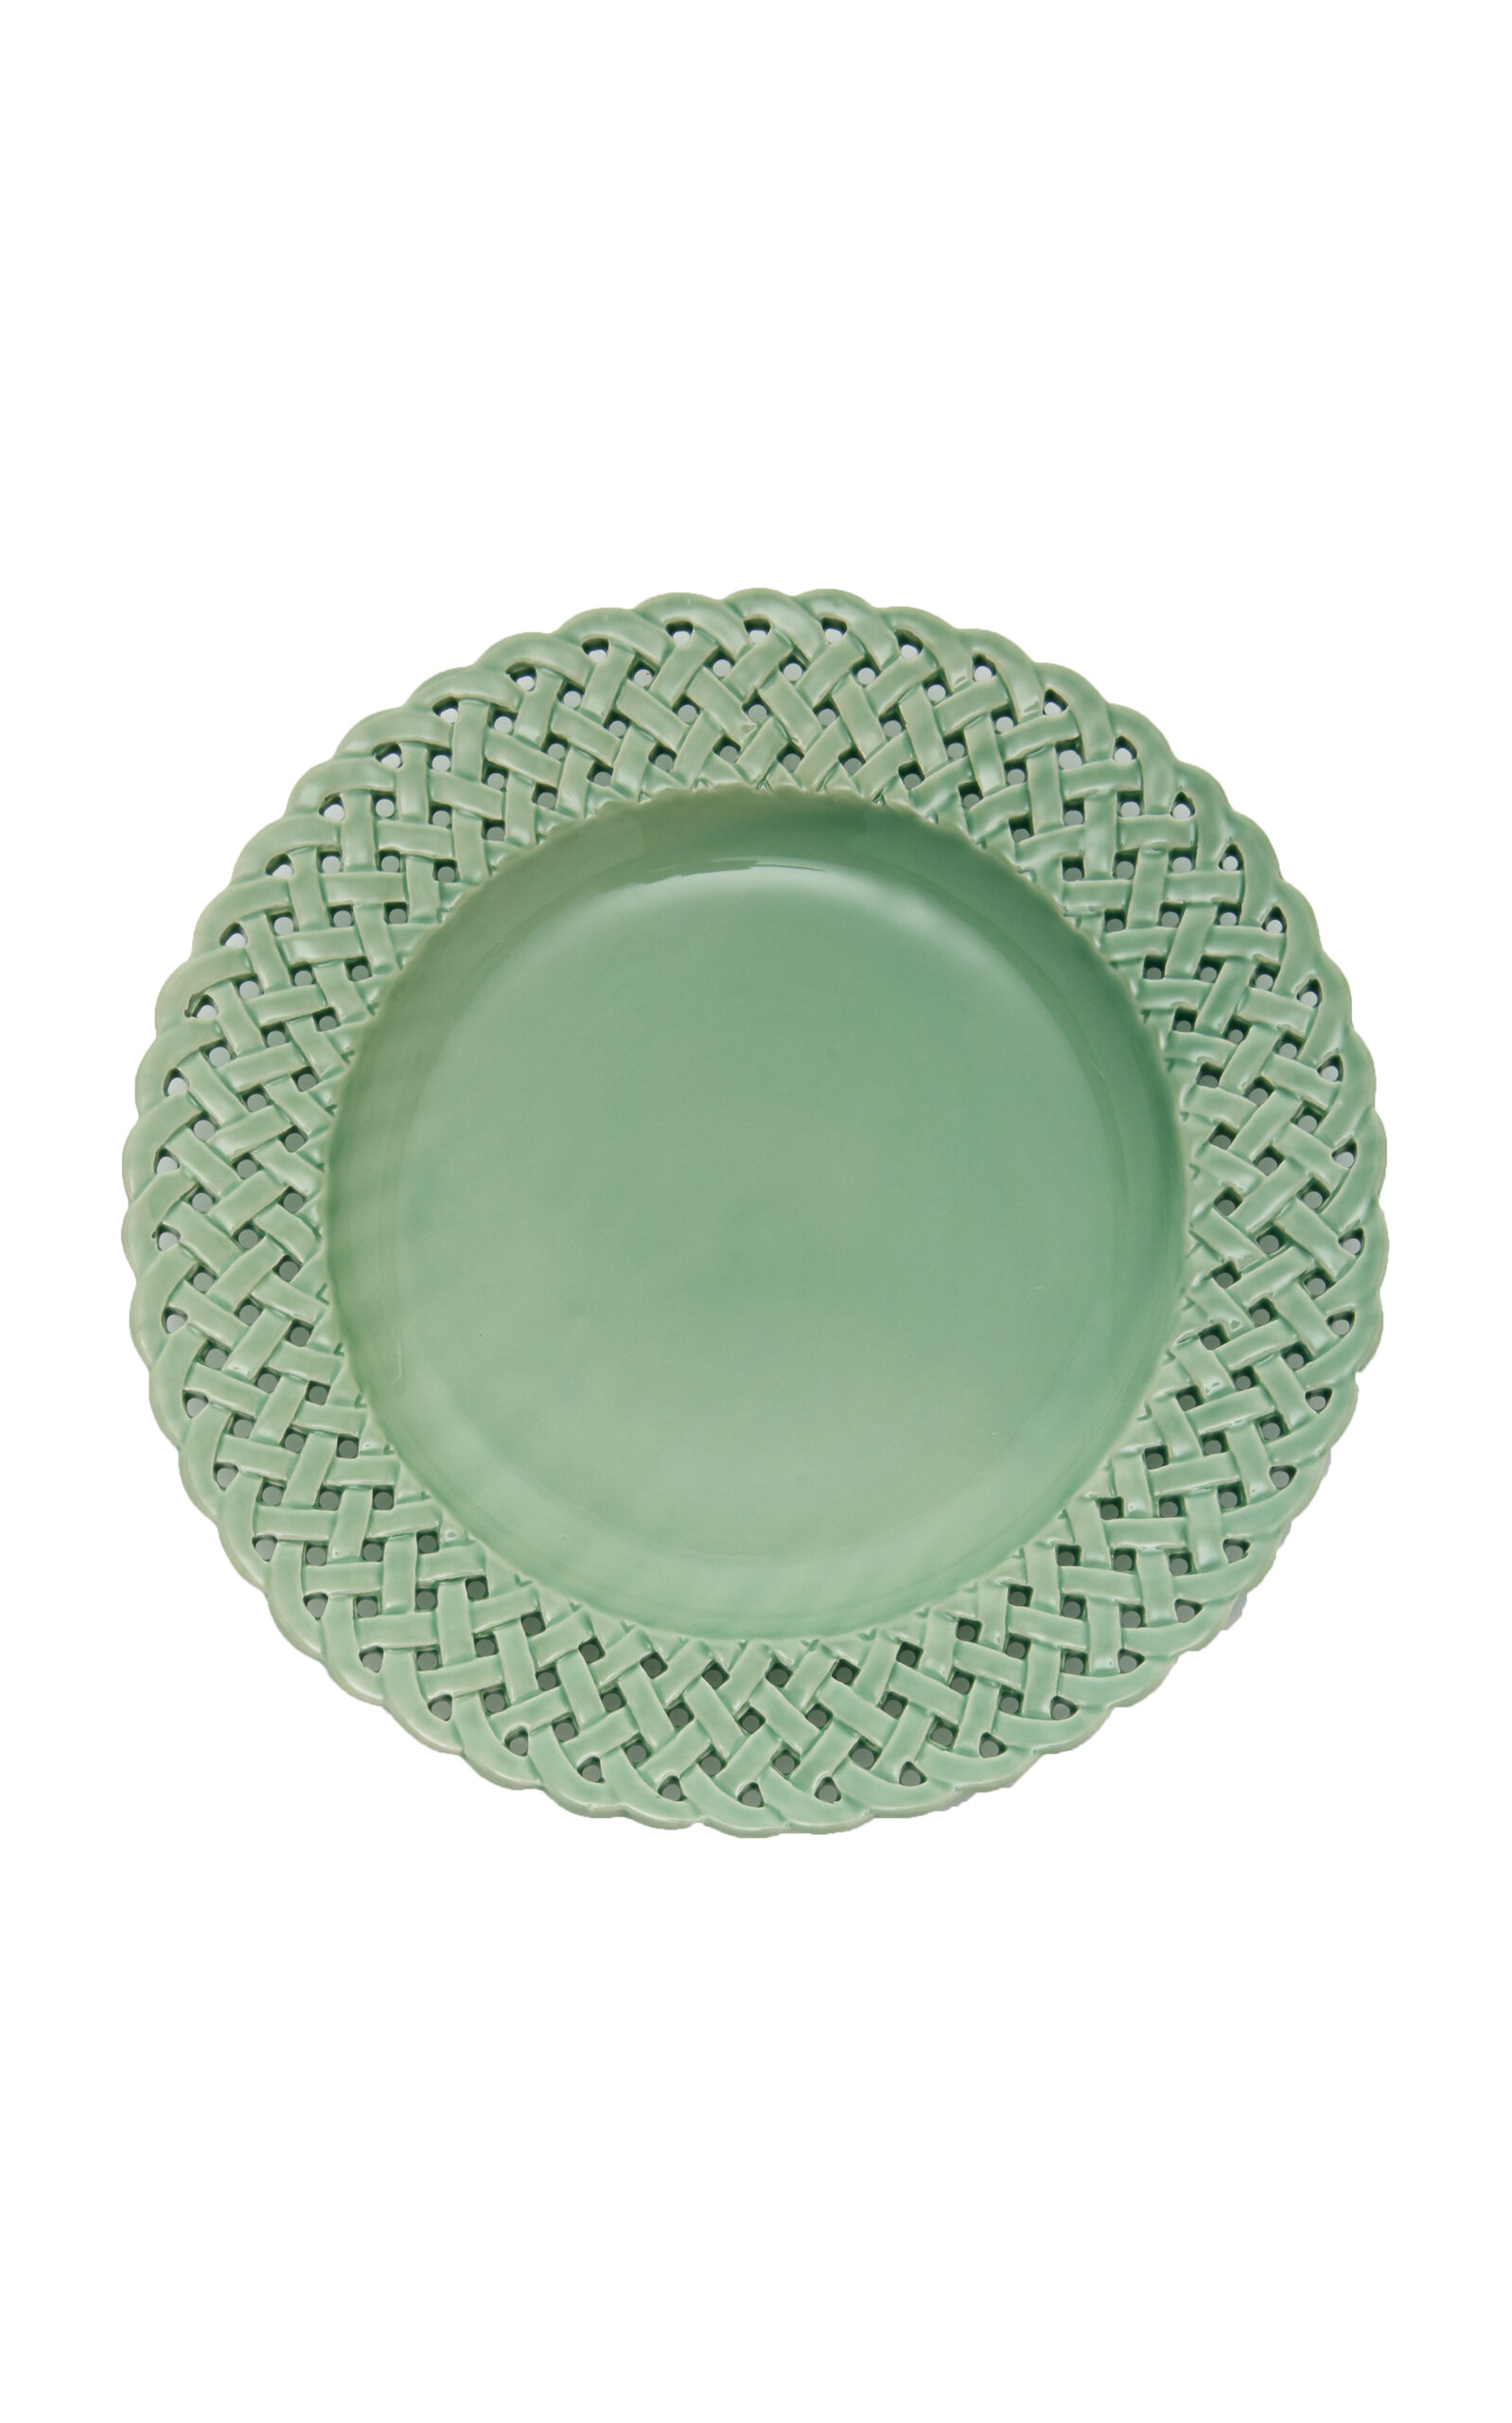 Moda Domus Hopenwork Creamware Dinner Plate In Green